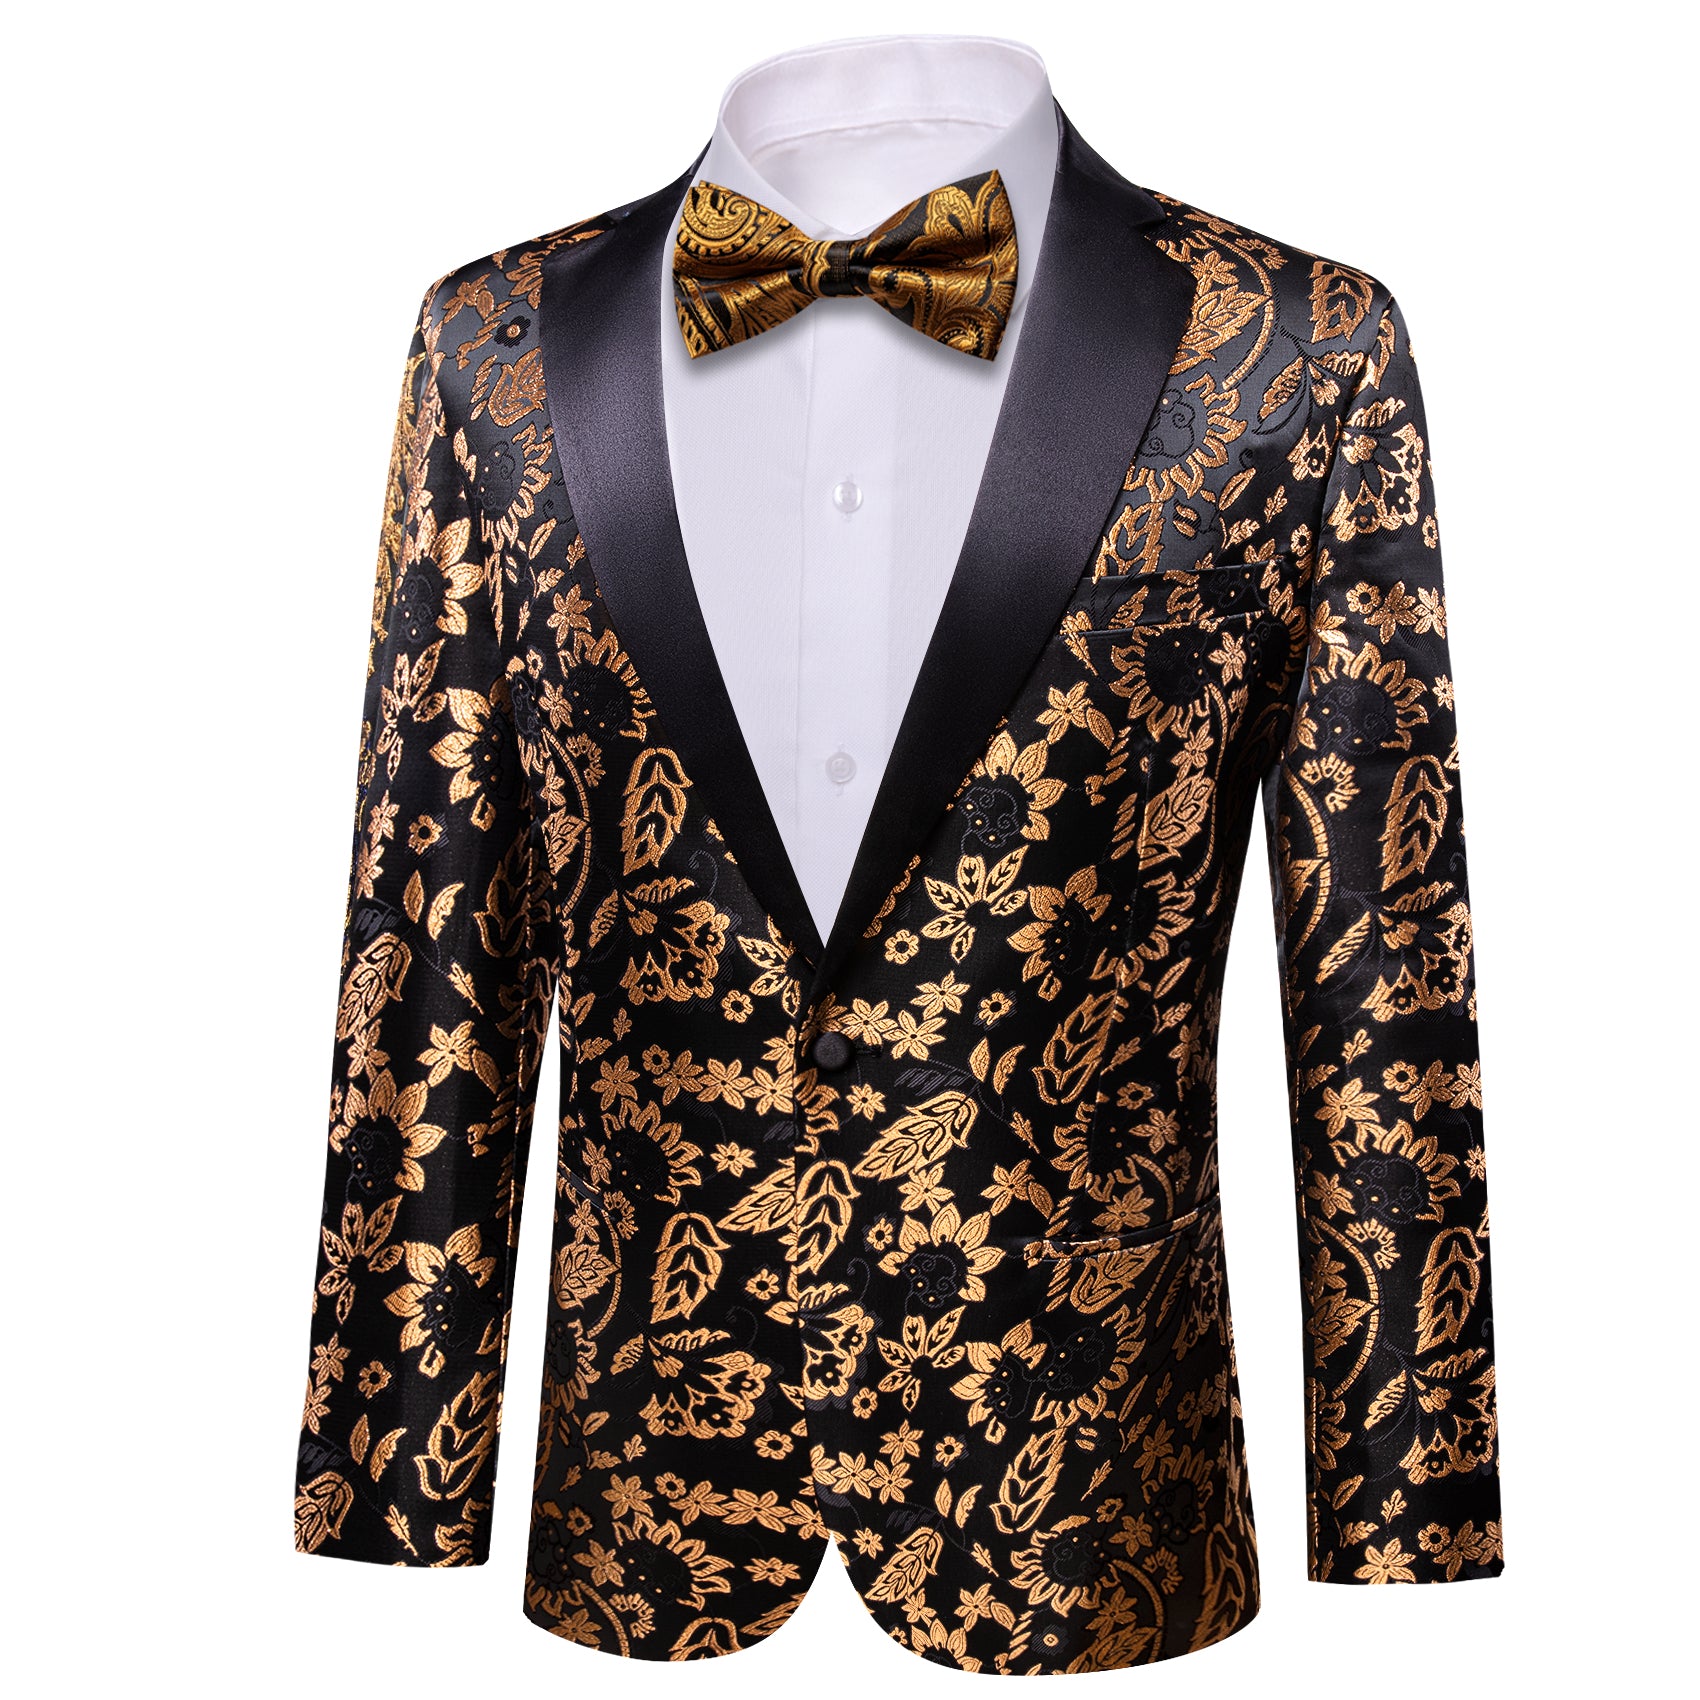 Barry.wang Men's Notched Collar Suit Gold Floral Suit Jacket